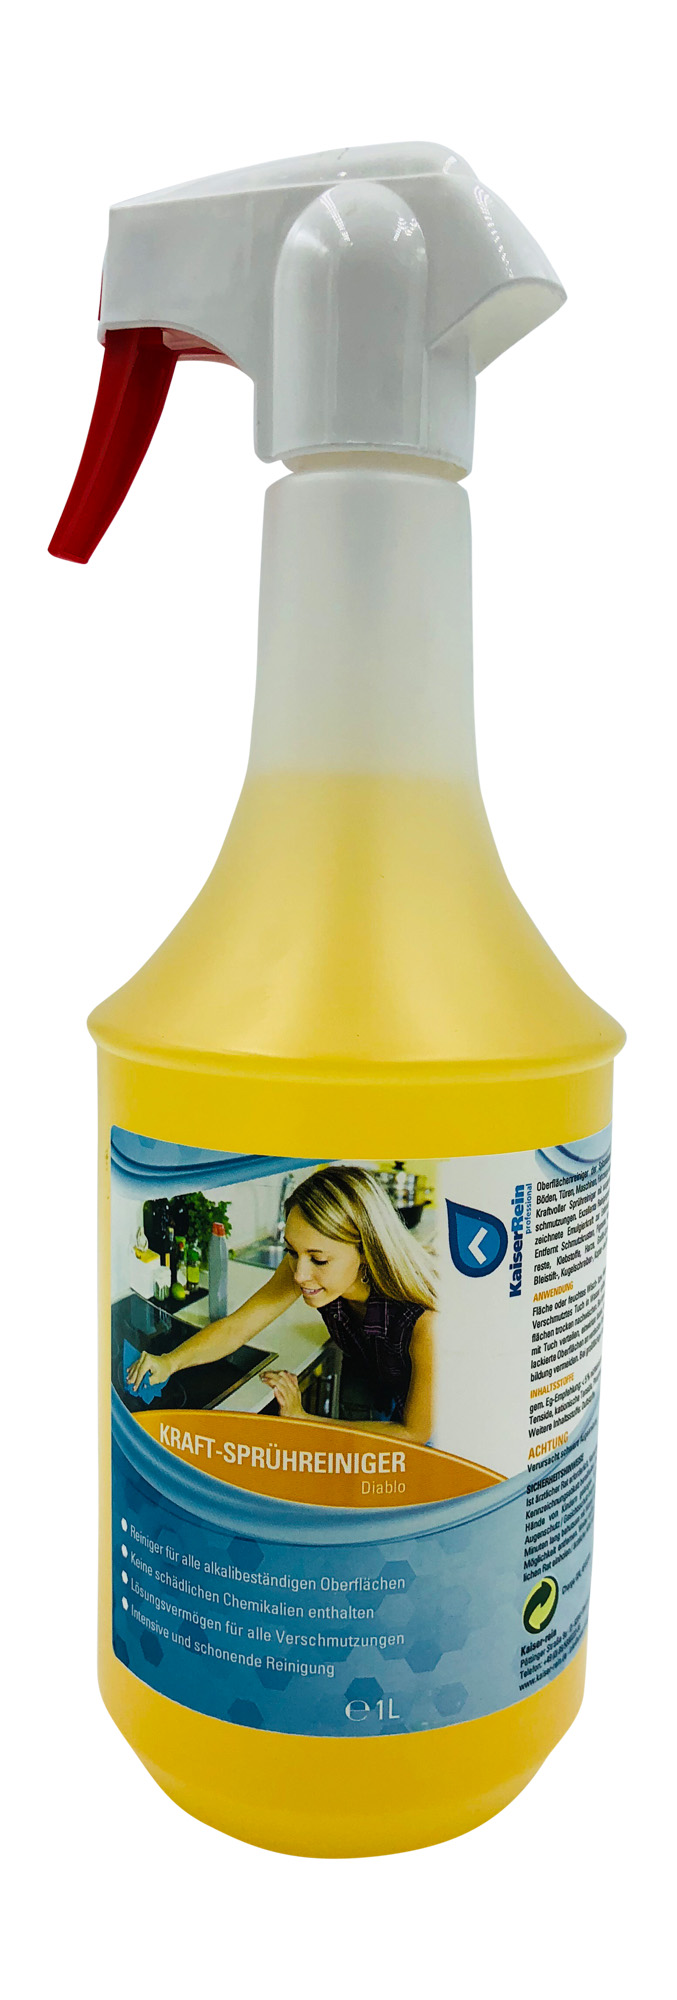 KaiserRein Kraftreiniger Diablo Spray gelb 1l (1000 ml) für Haushalt und Gewerbe